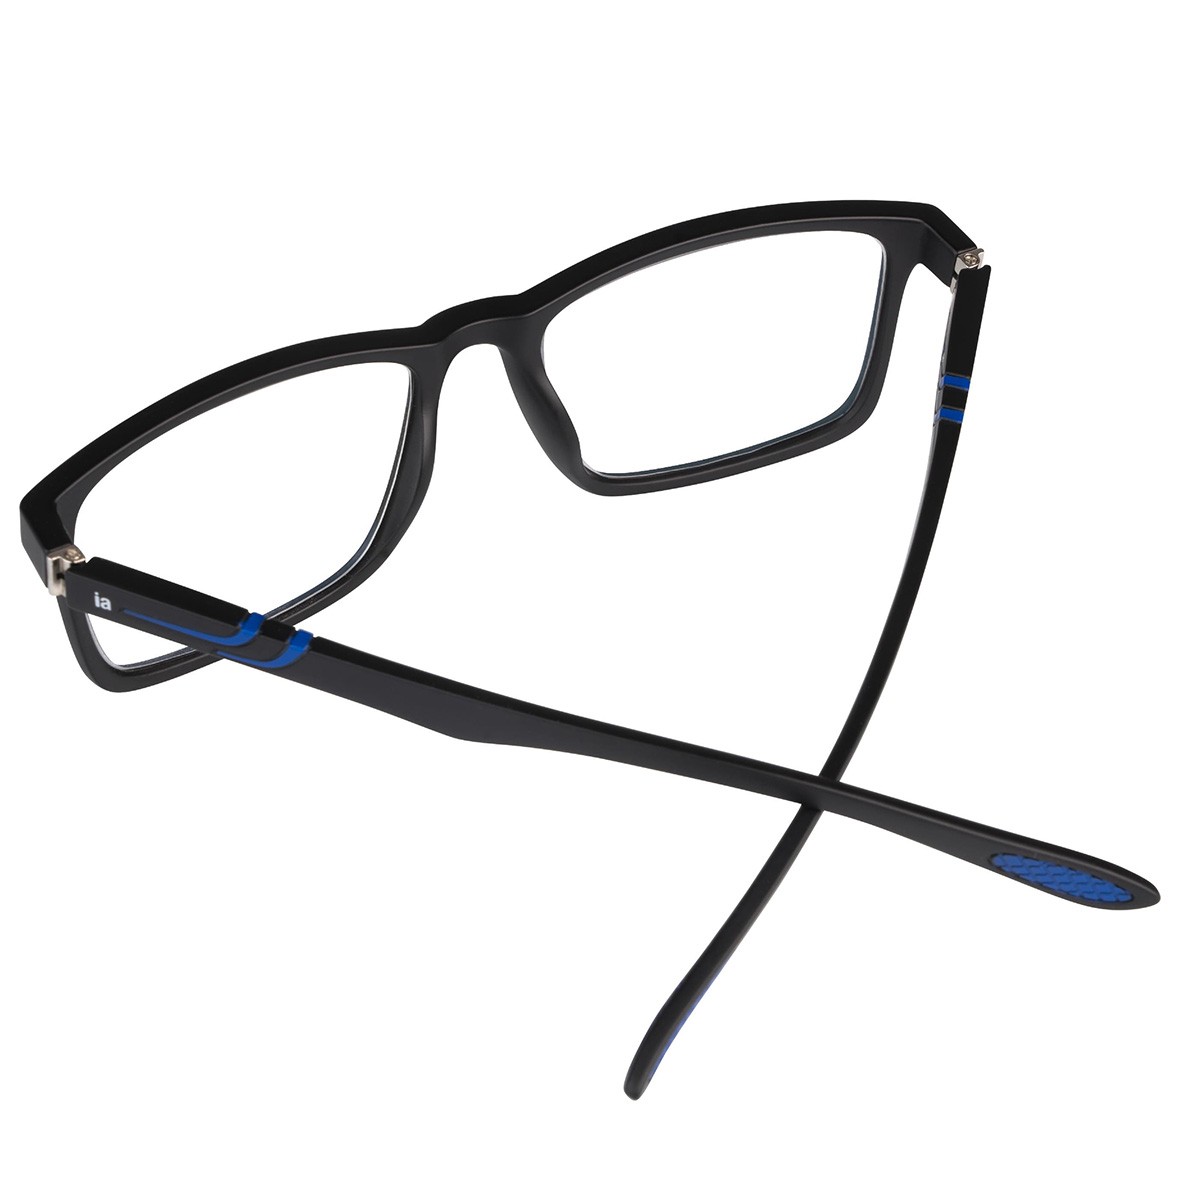 Iaview gafa de presbicia WINGS tr azul- negra